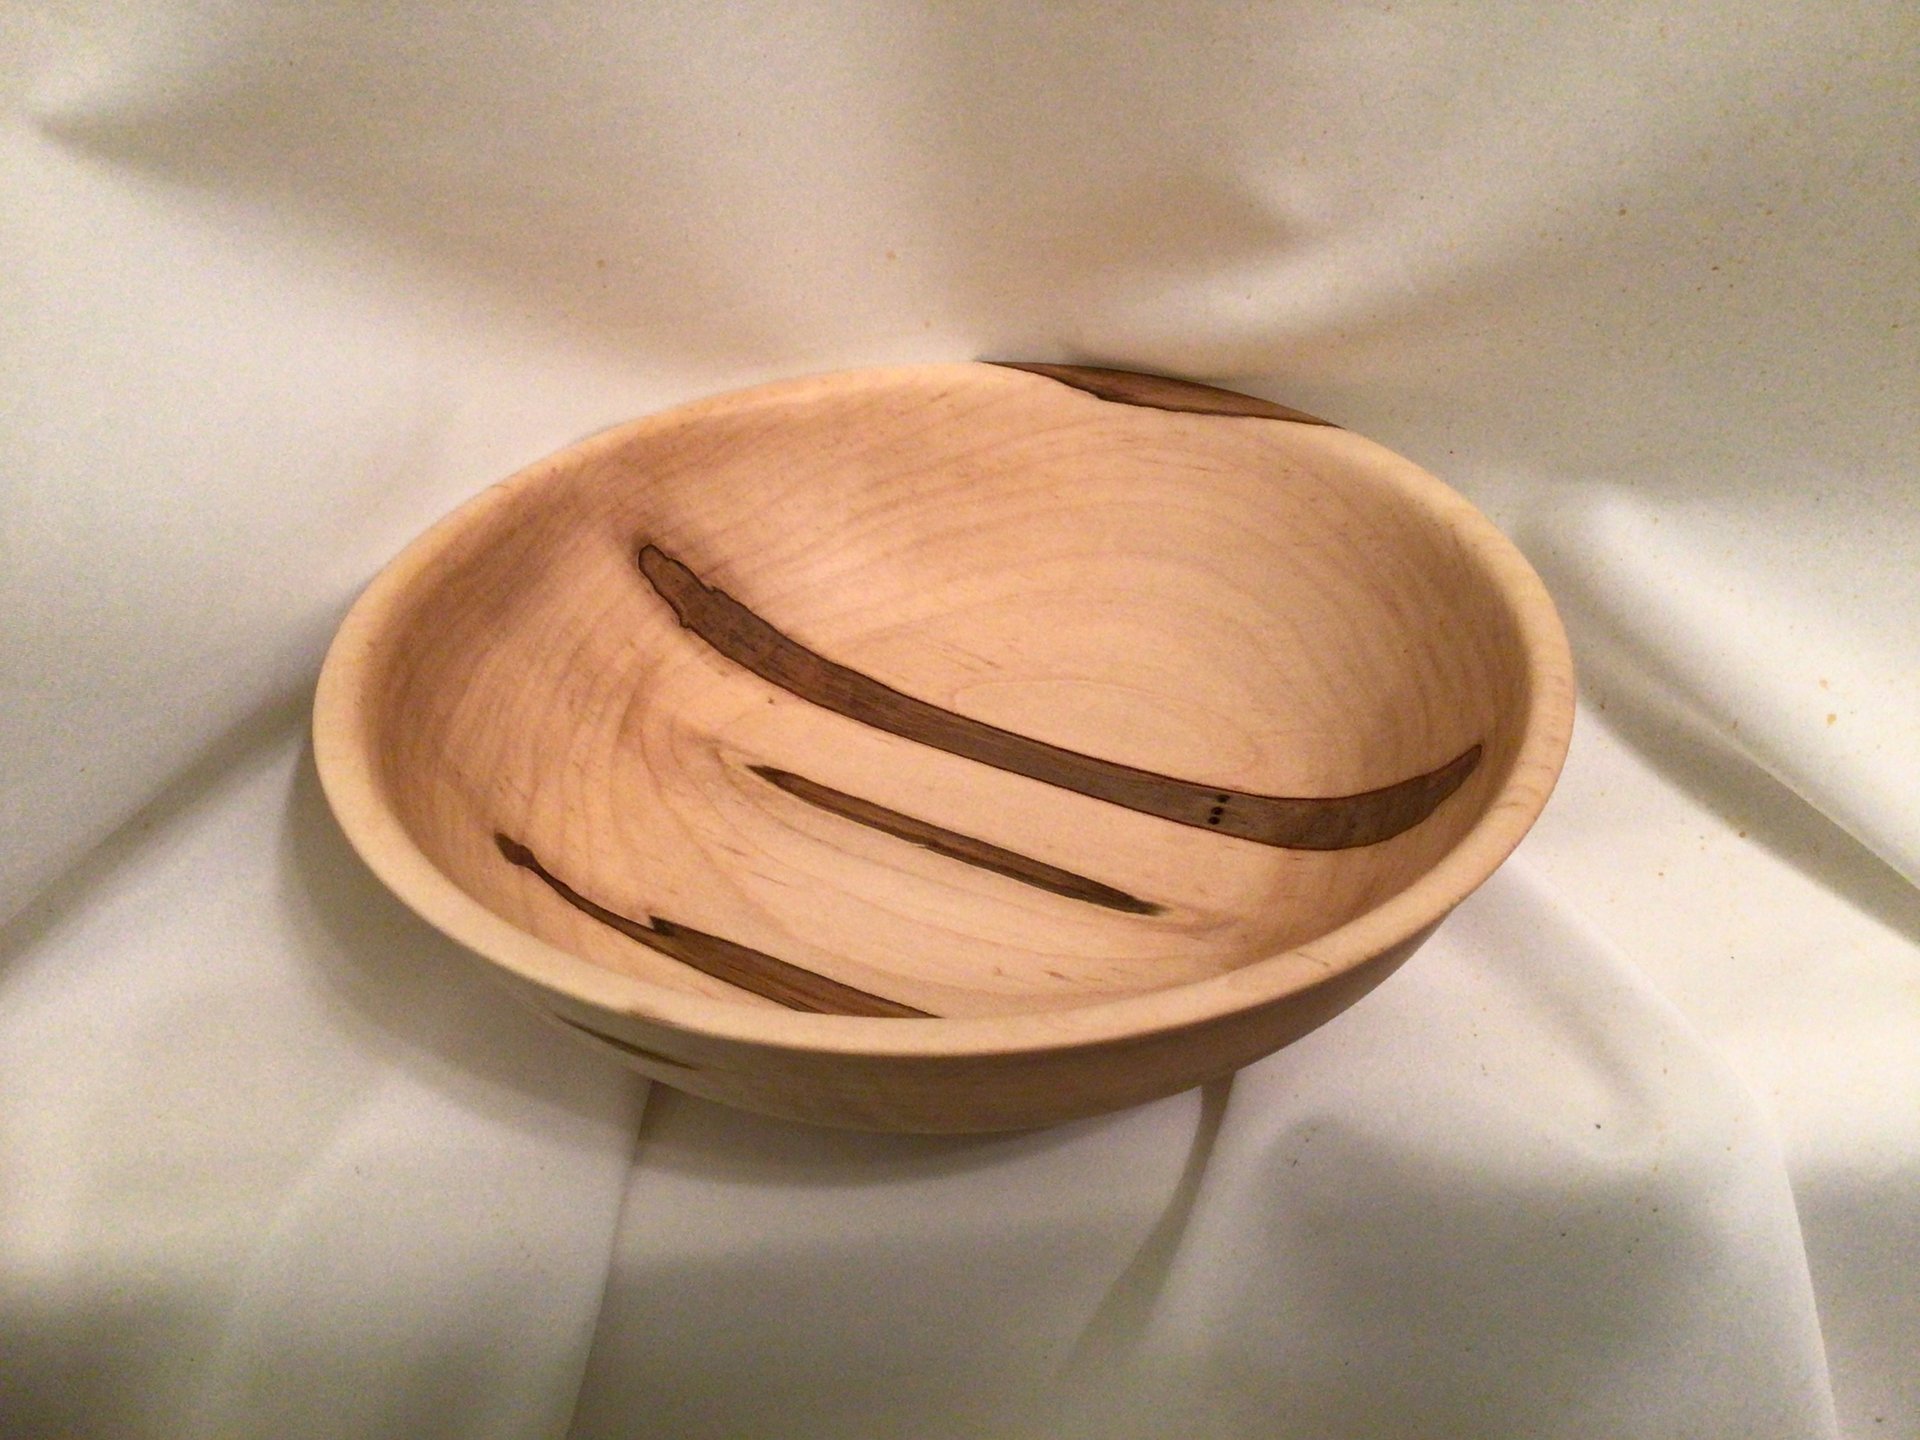 Ambrosia maple bowl